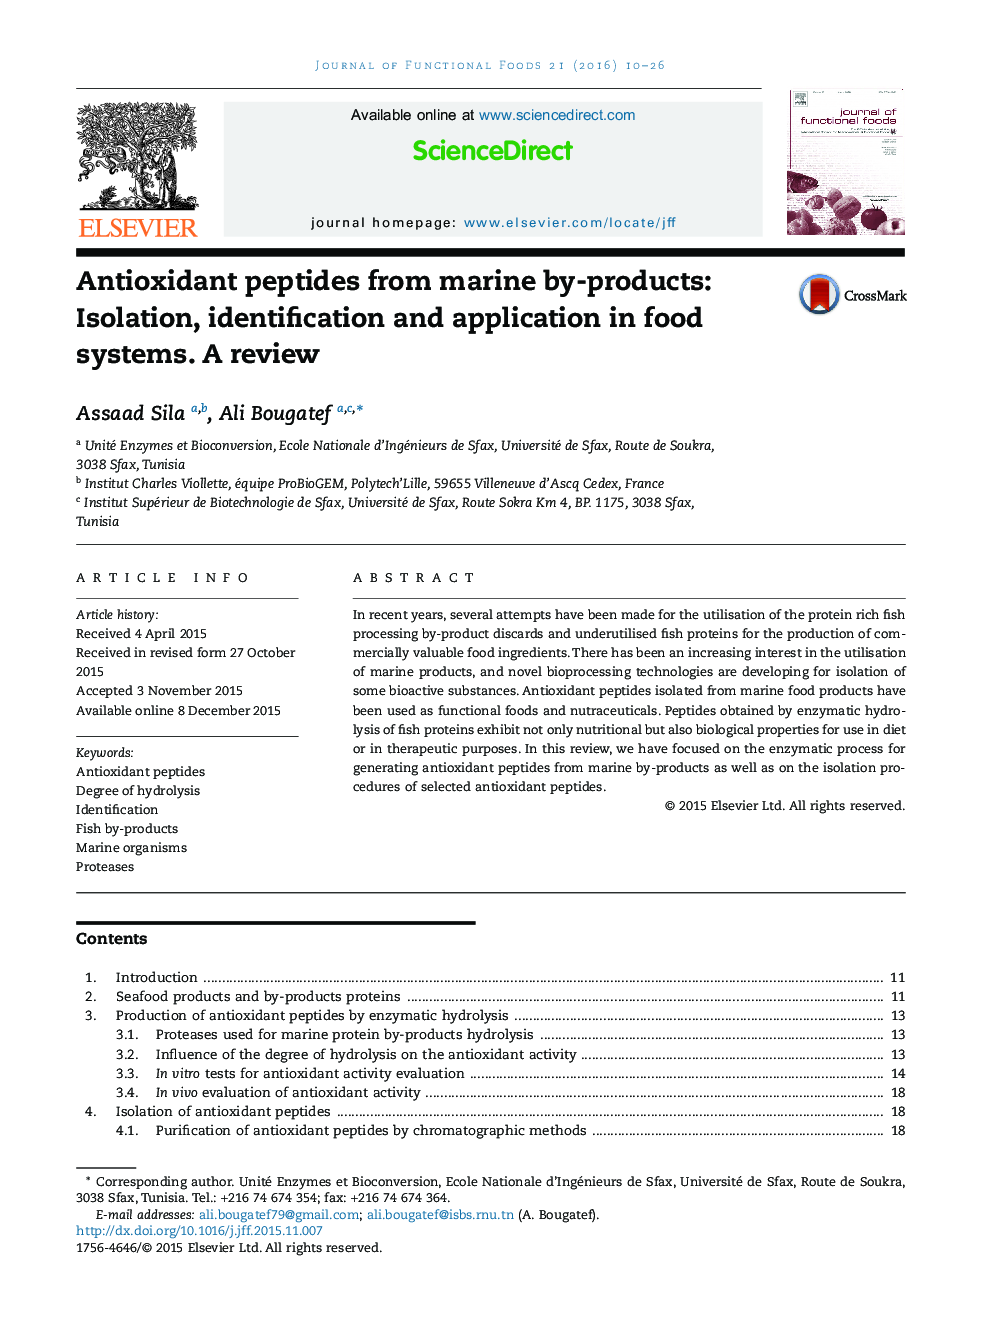 پپتیدهای آنتی اکسیدان از محصولات جانبی دریایی: جداسازی، شناسایی و کاربرد در سیستم های غذایی. بازنگری 